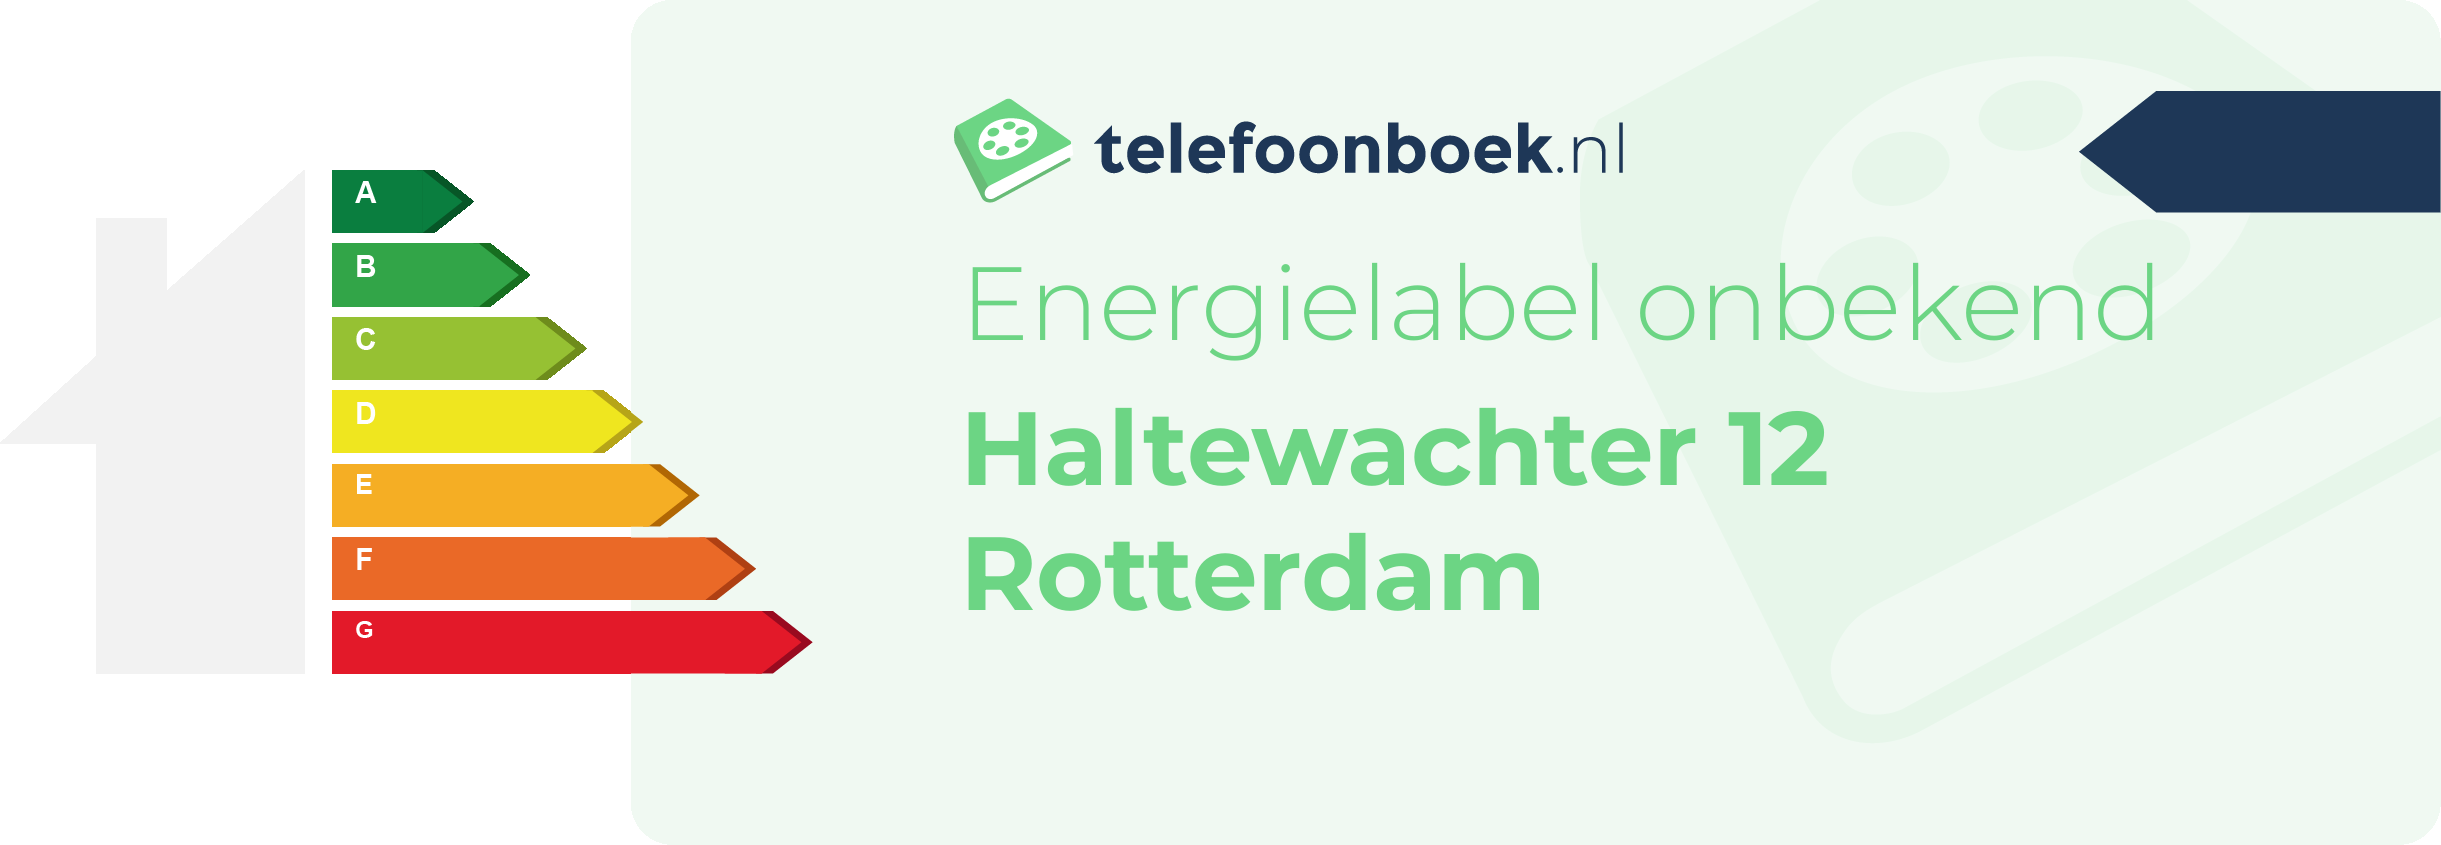 Energielabel Haltewachter 12 Rotterdam